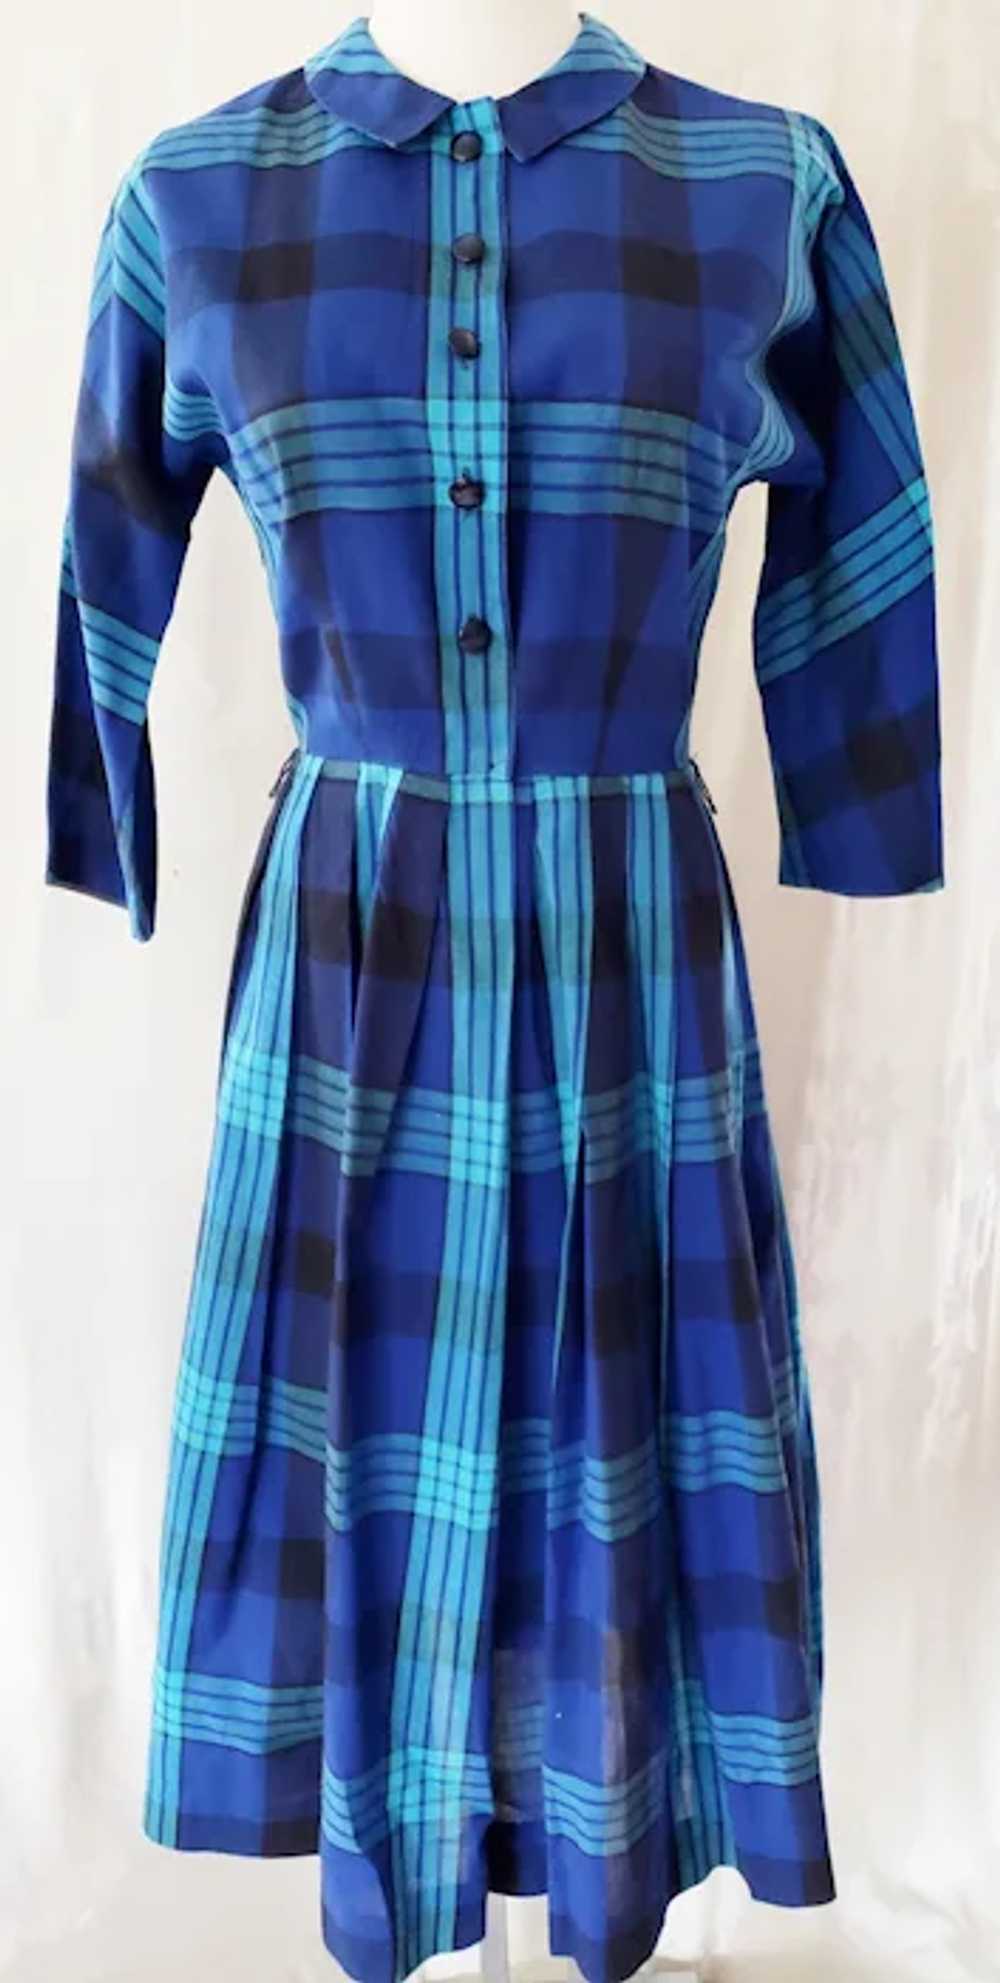 CRISP, BRIGHT Shirtwaist 1960's Dress - image 2